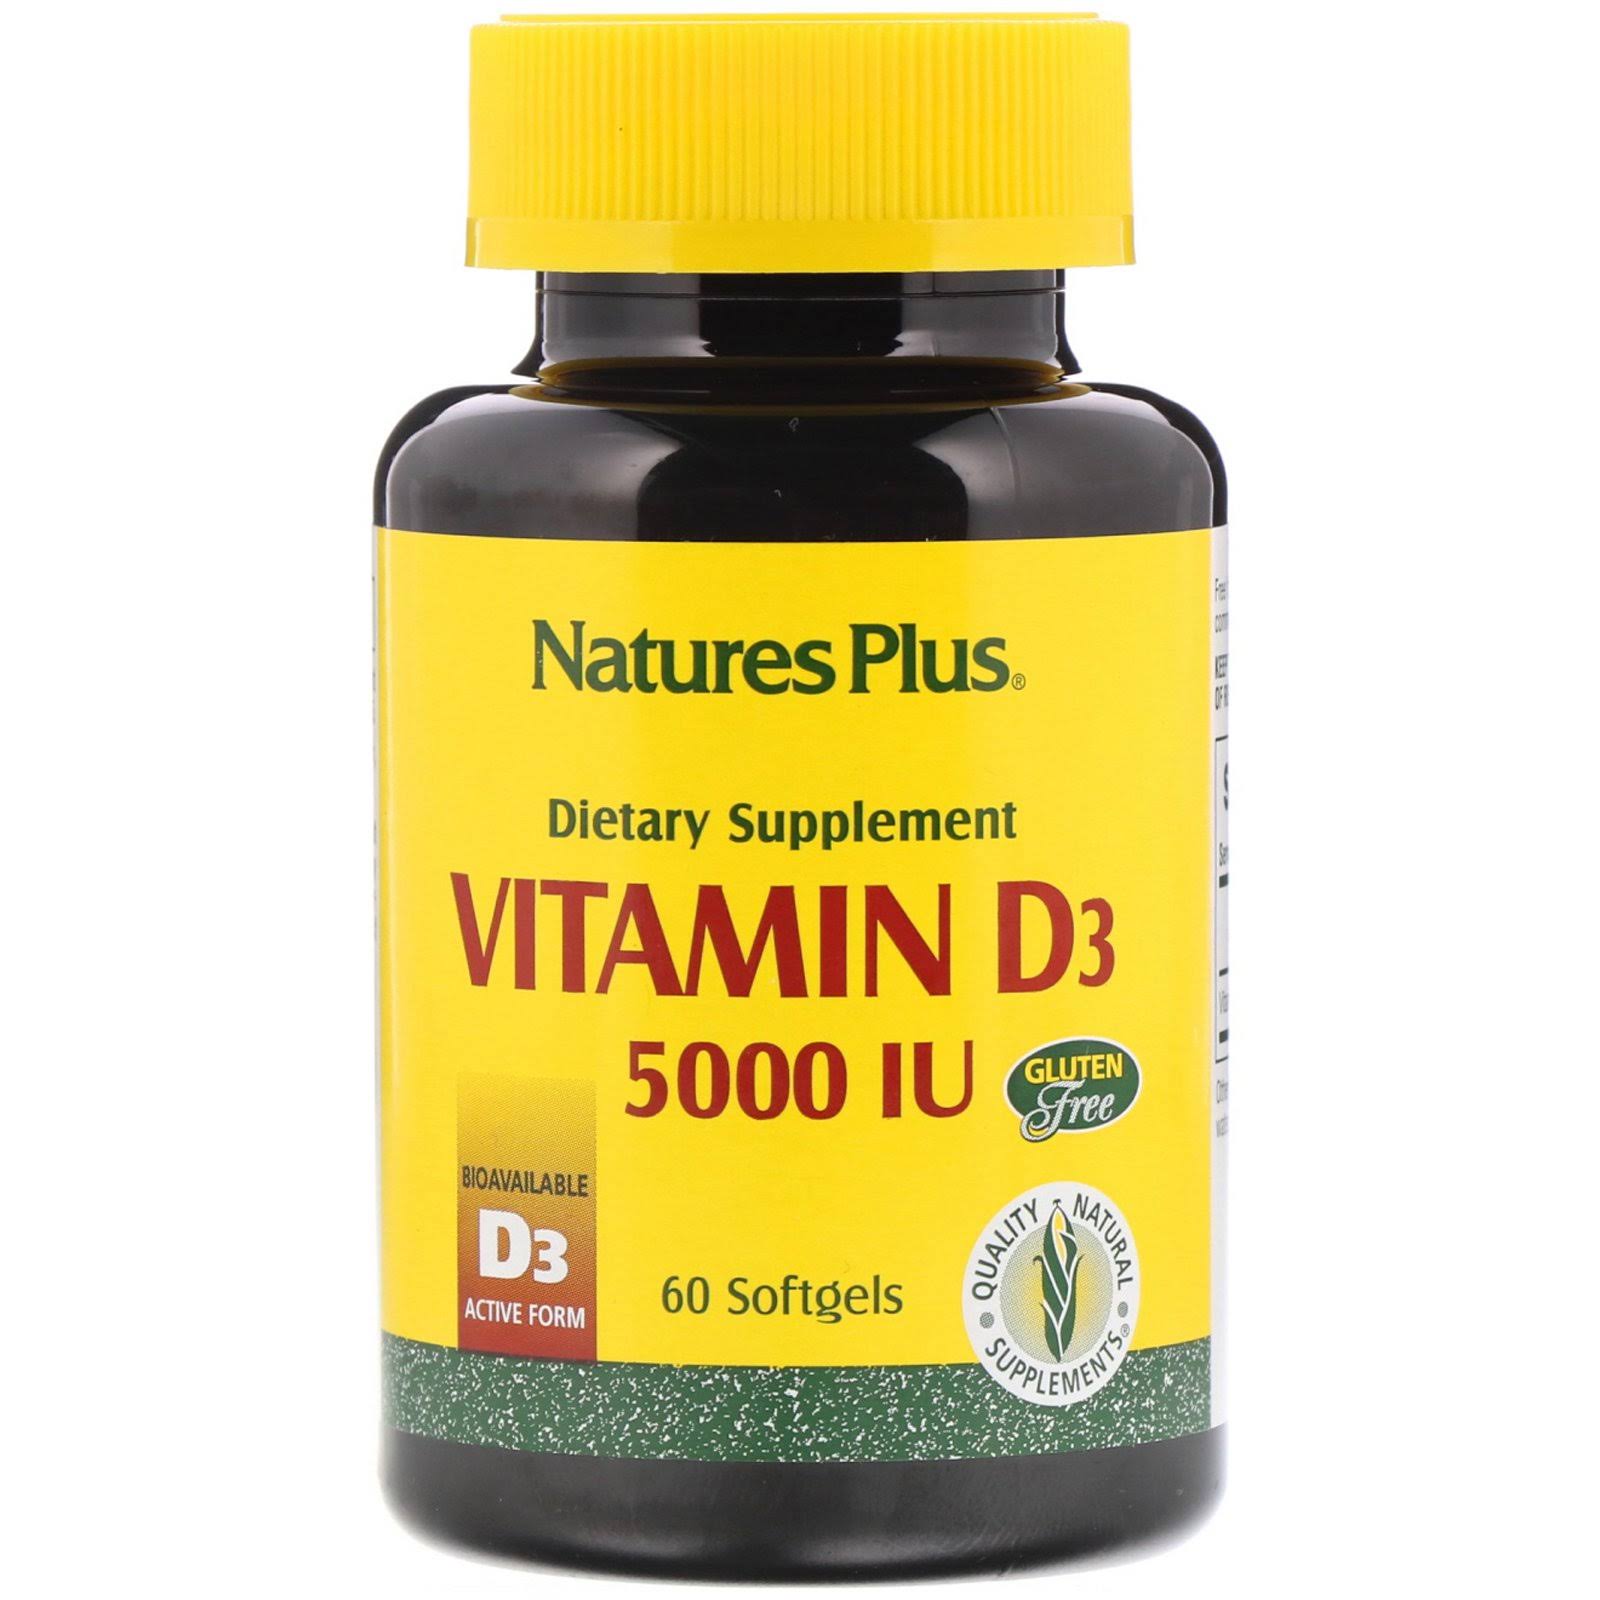 Natures Plus Vitamin D3 5000iu - 60 Softgels